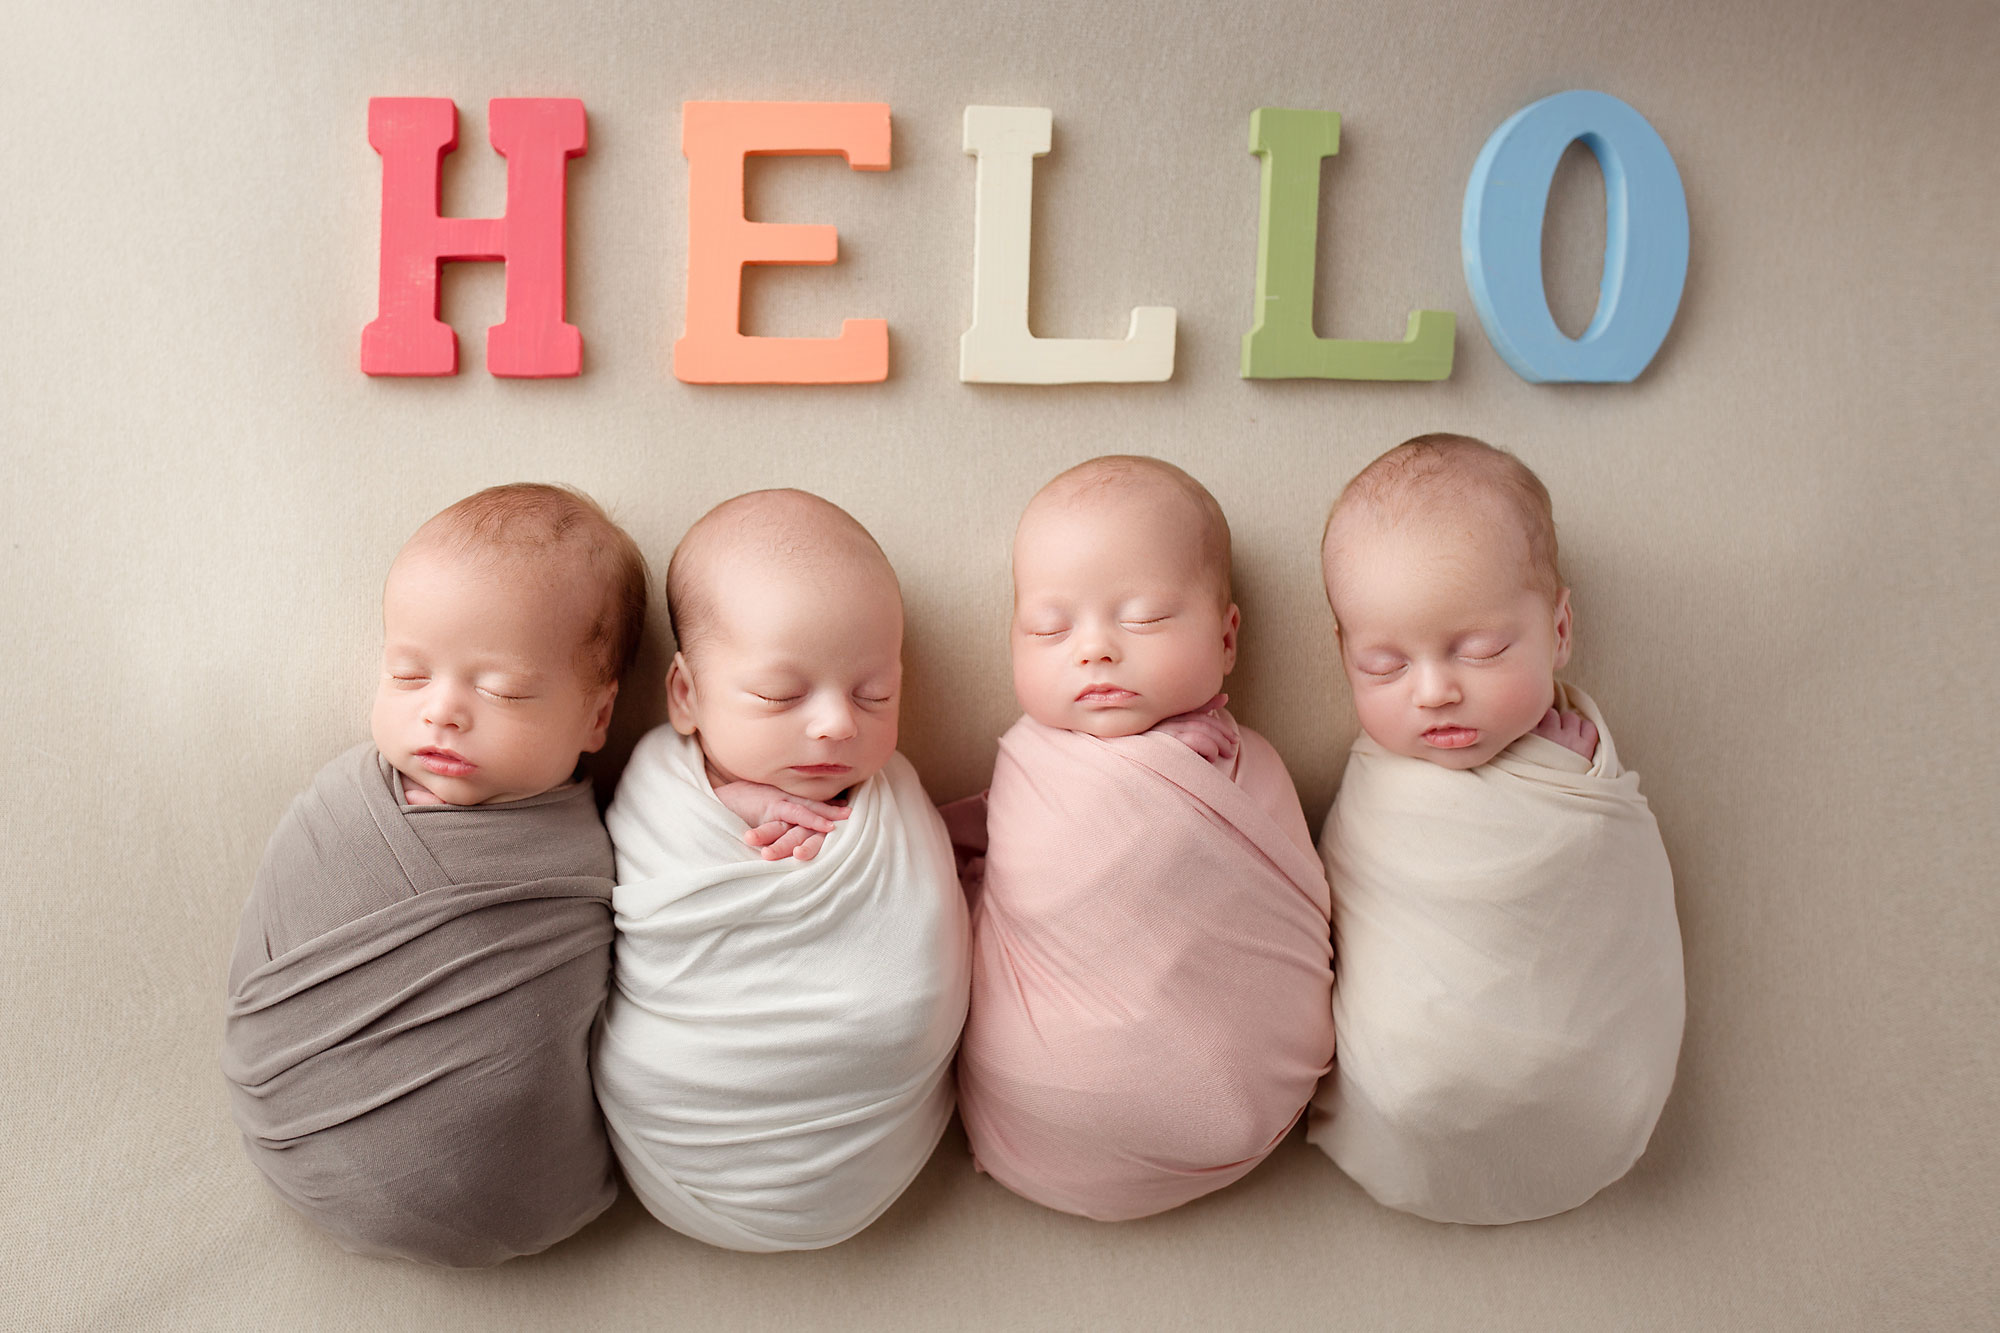 quadruplets newborn rainbow babies 